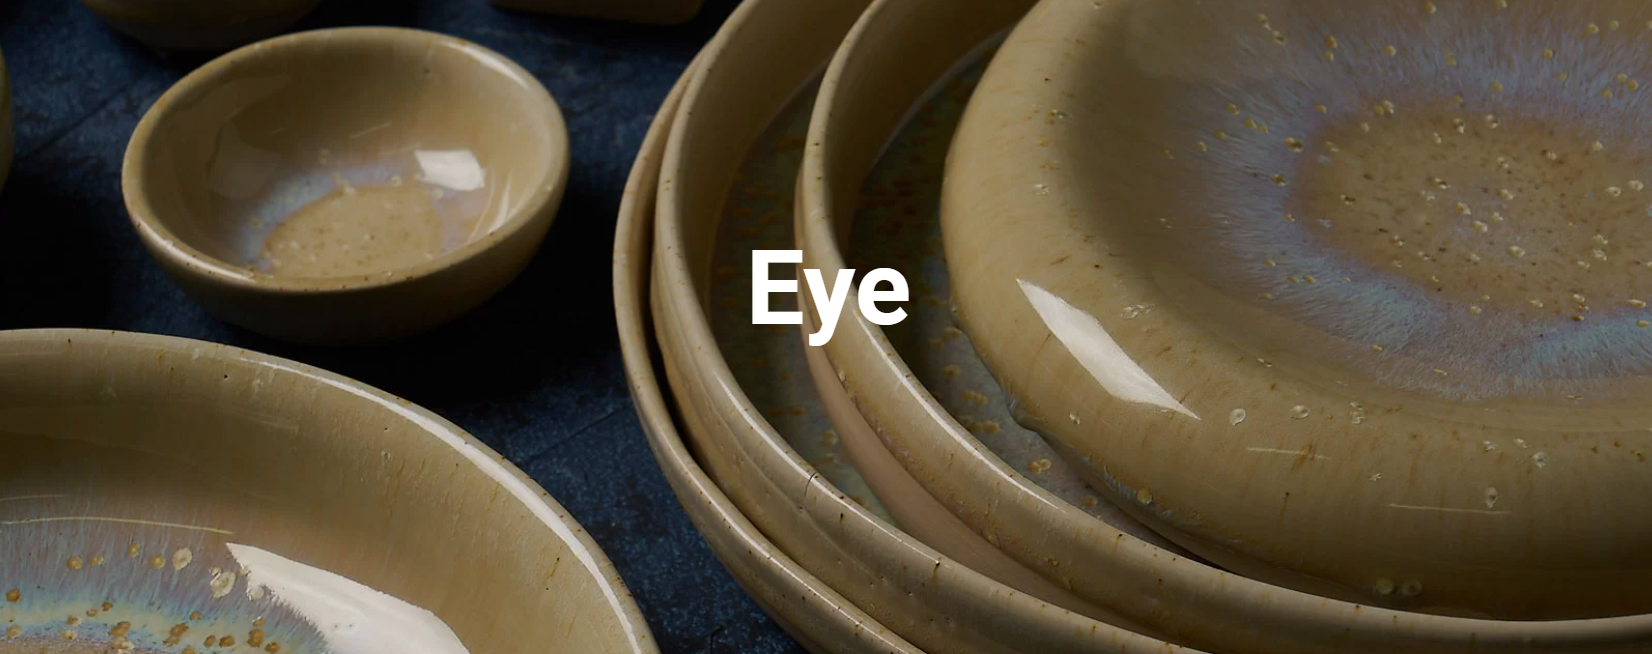 Высококачесвенная керамическая посуда ручной работы ClayVille Ceramics (Россия) серии Eye тёмно-бежевая с голубым